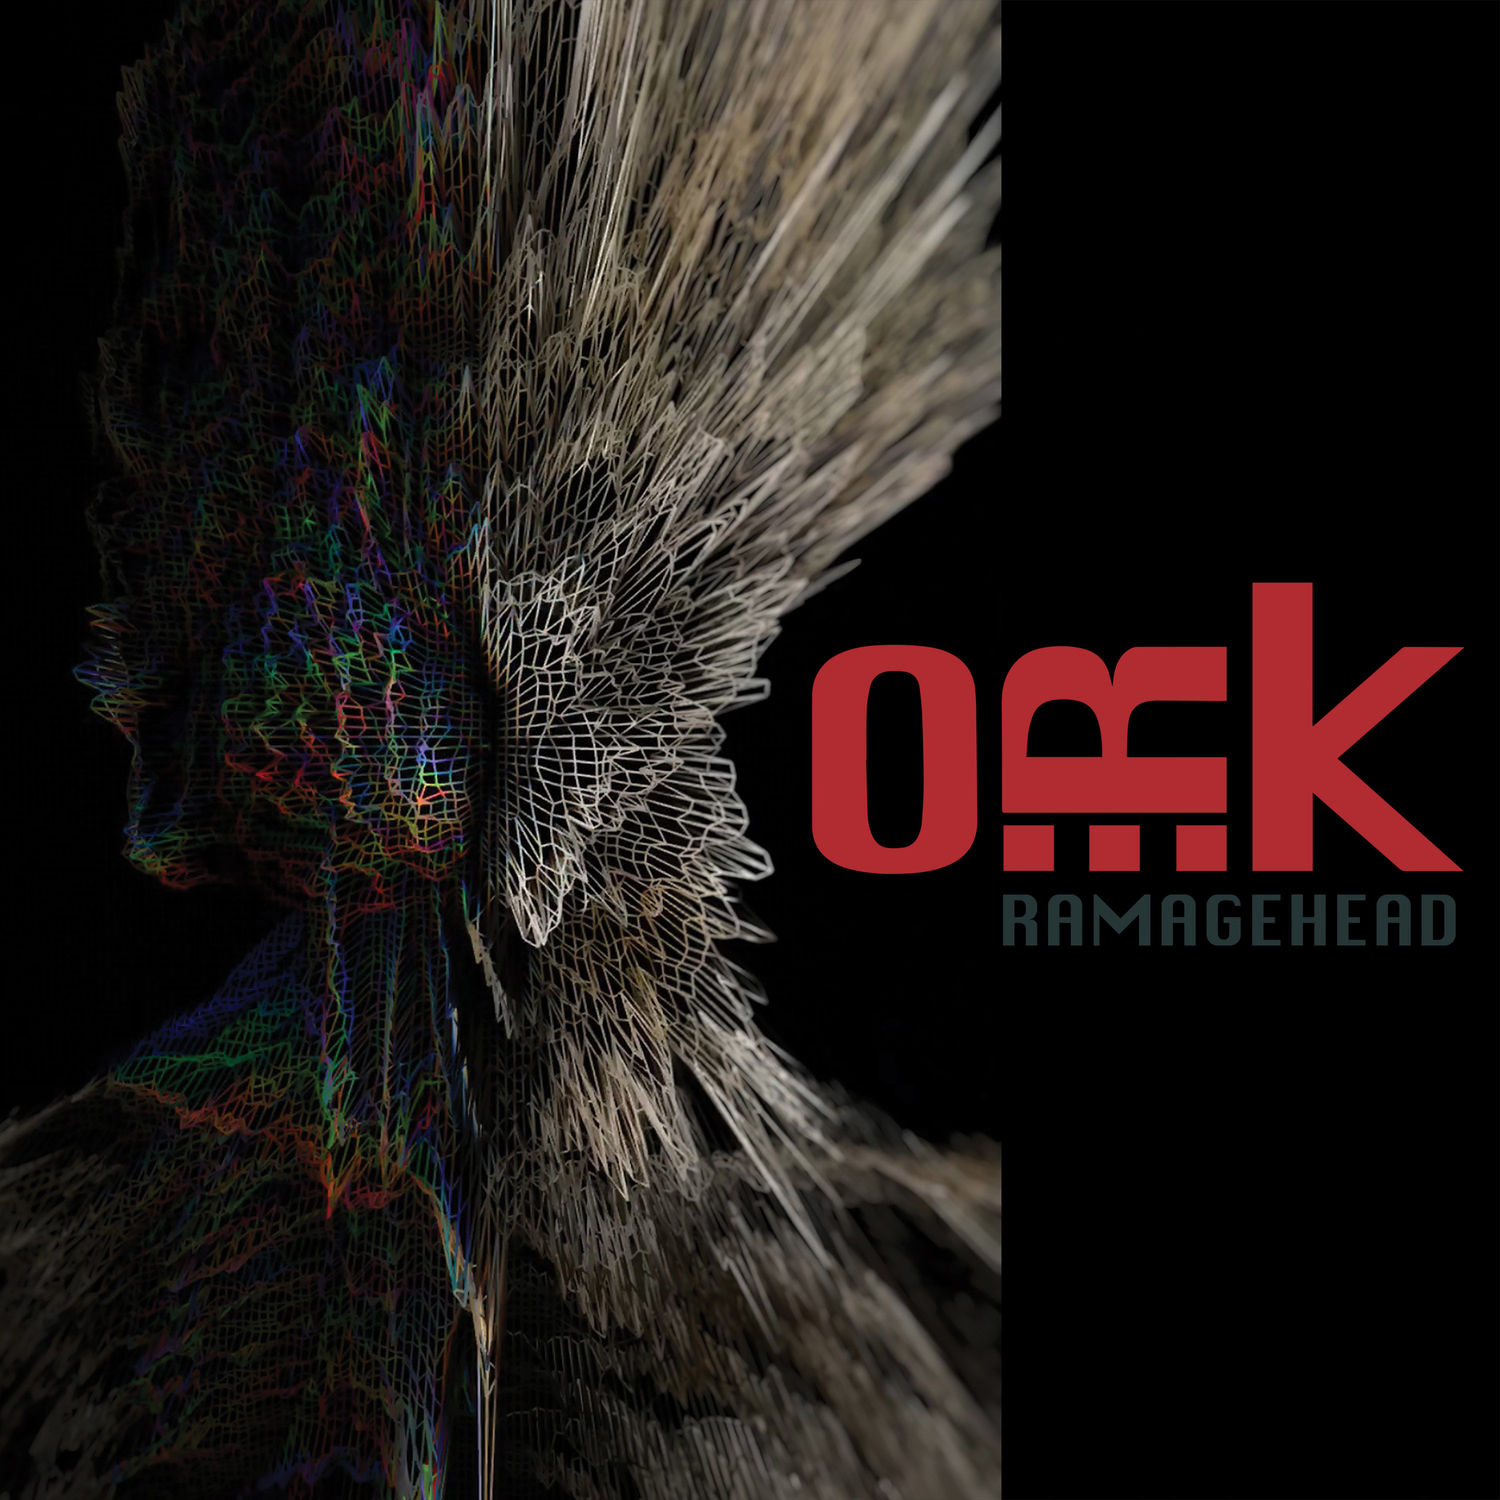 O.R.k. – Ramagehead (2019) [FLAC 24bit/48kHz]